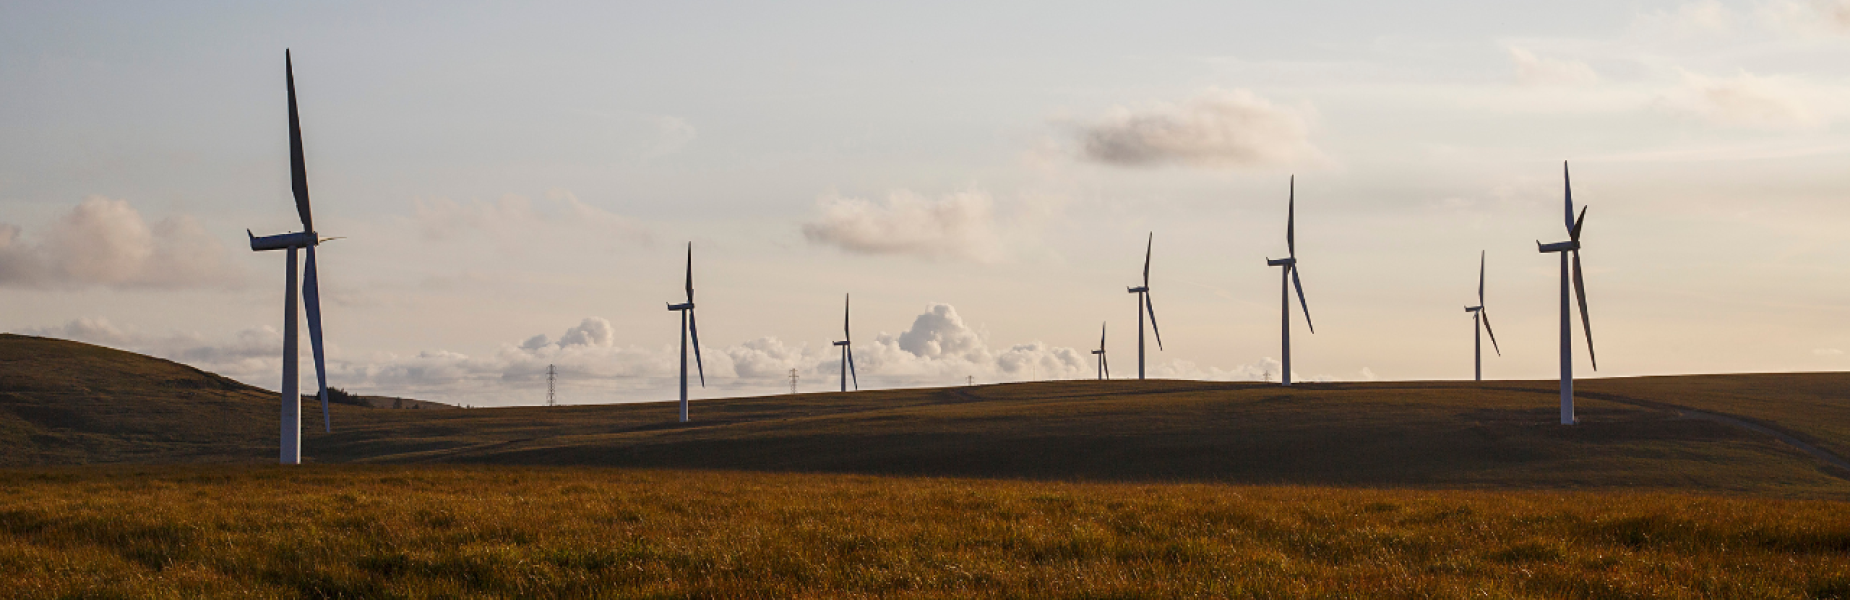 Wind farm in Wales